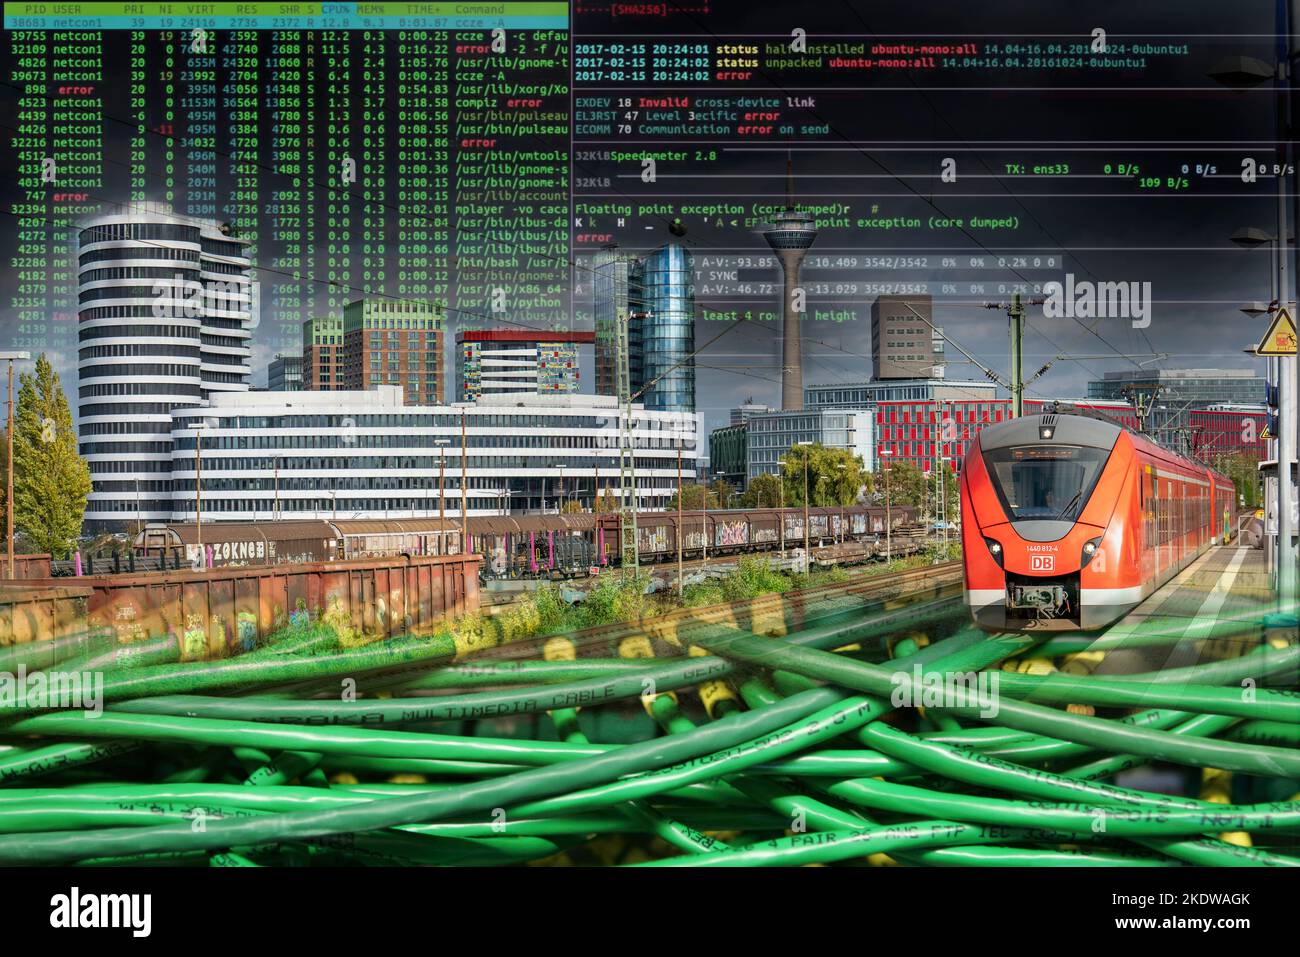 Symbolische Image kritische Infrastruktur, Skyline von Düsseldorf, Medienhafen, Datenkabel, Hacker-Code, Stockfoto